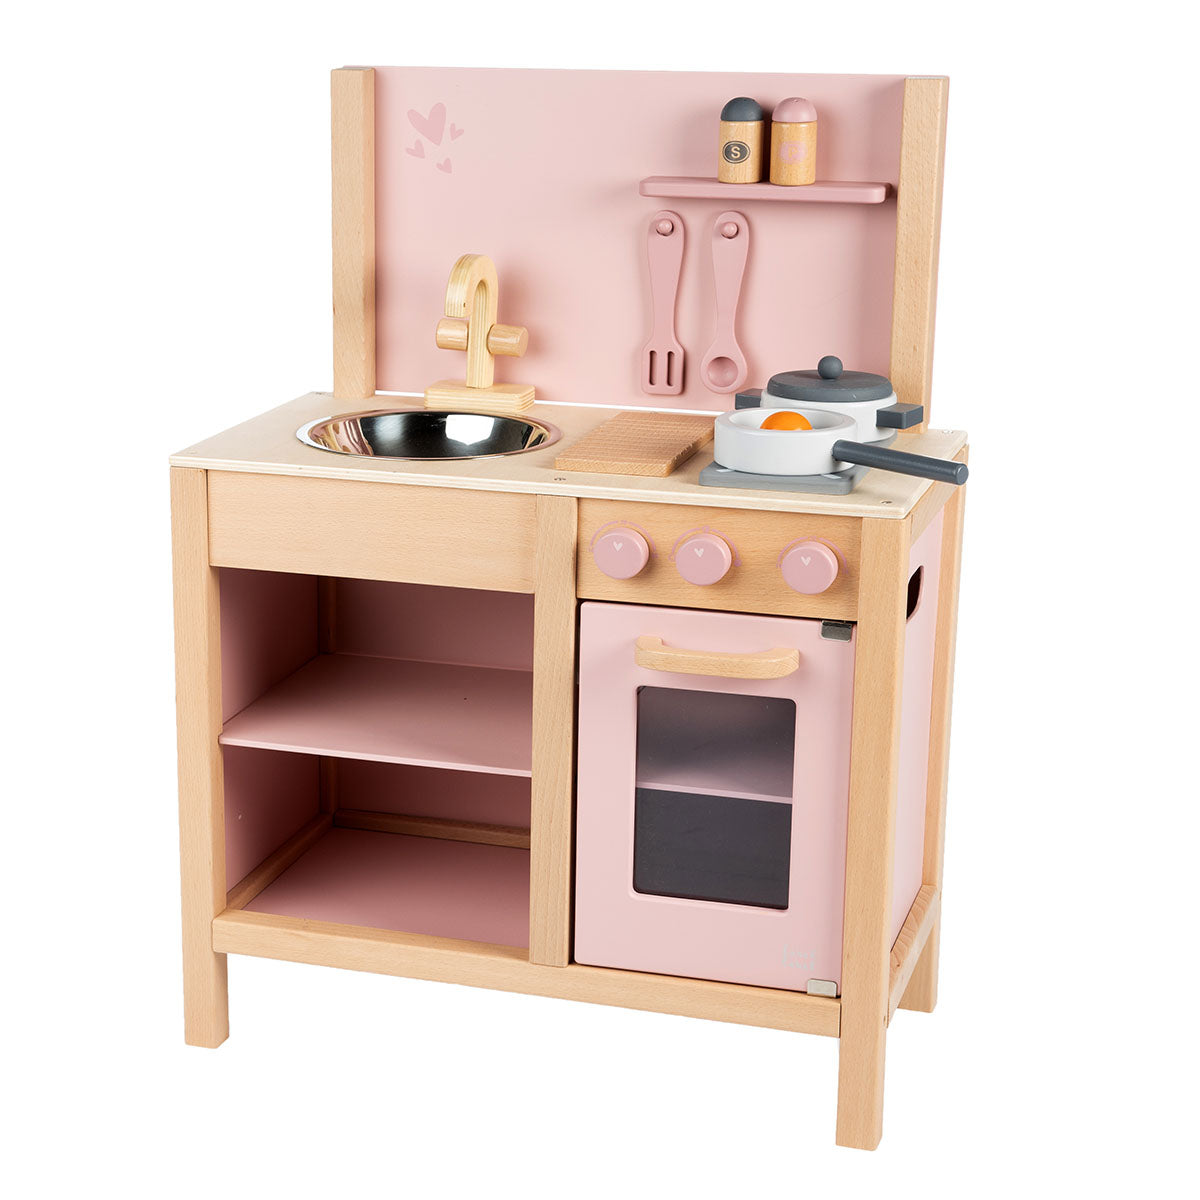 Je kleintje kan heerlijk kokkerellen in deze Label Label speelkeuken roze. Deze houten keuken heeft van alles: een oven, spoelbak, kastje en mooie accessoires als pannetjes en keukengerei. Alles is van FSC-hout. VanZus.